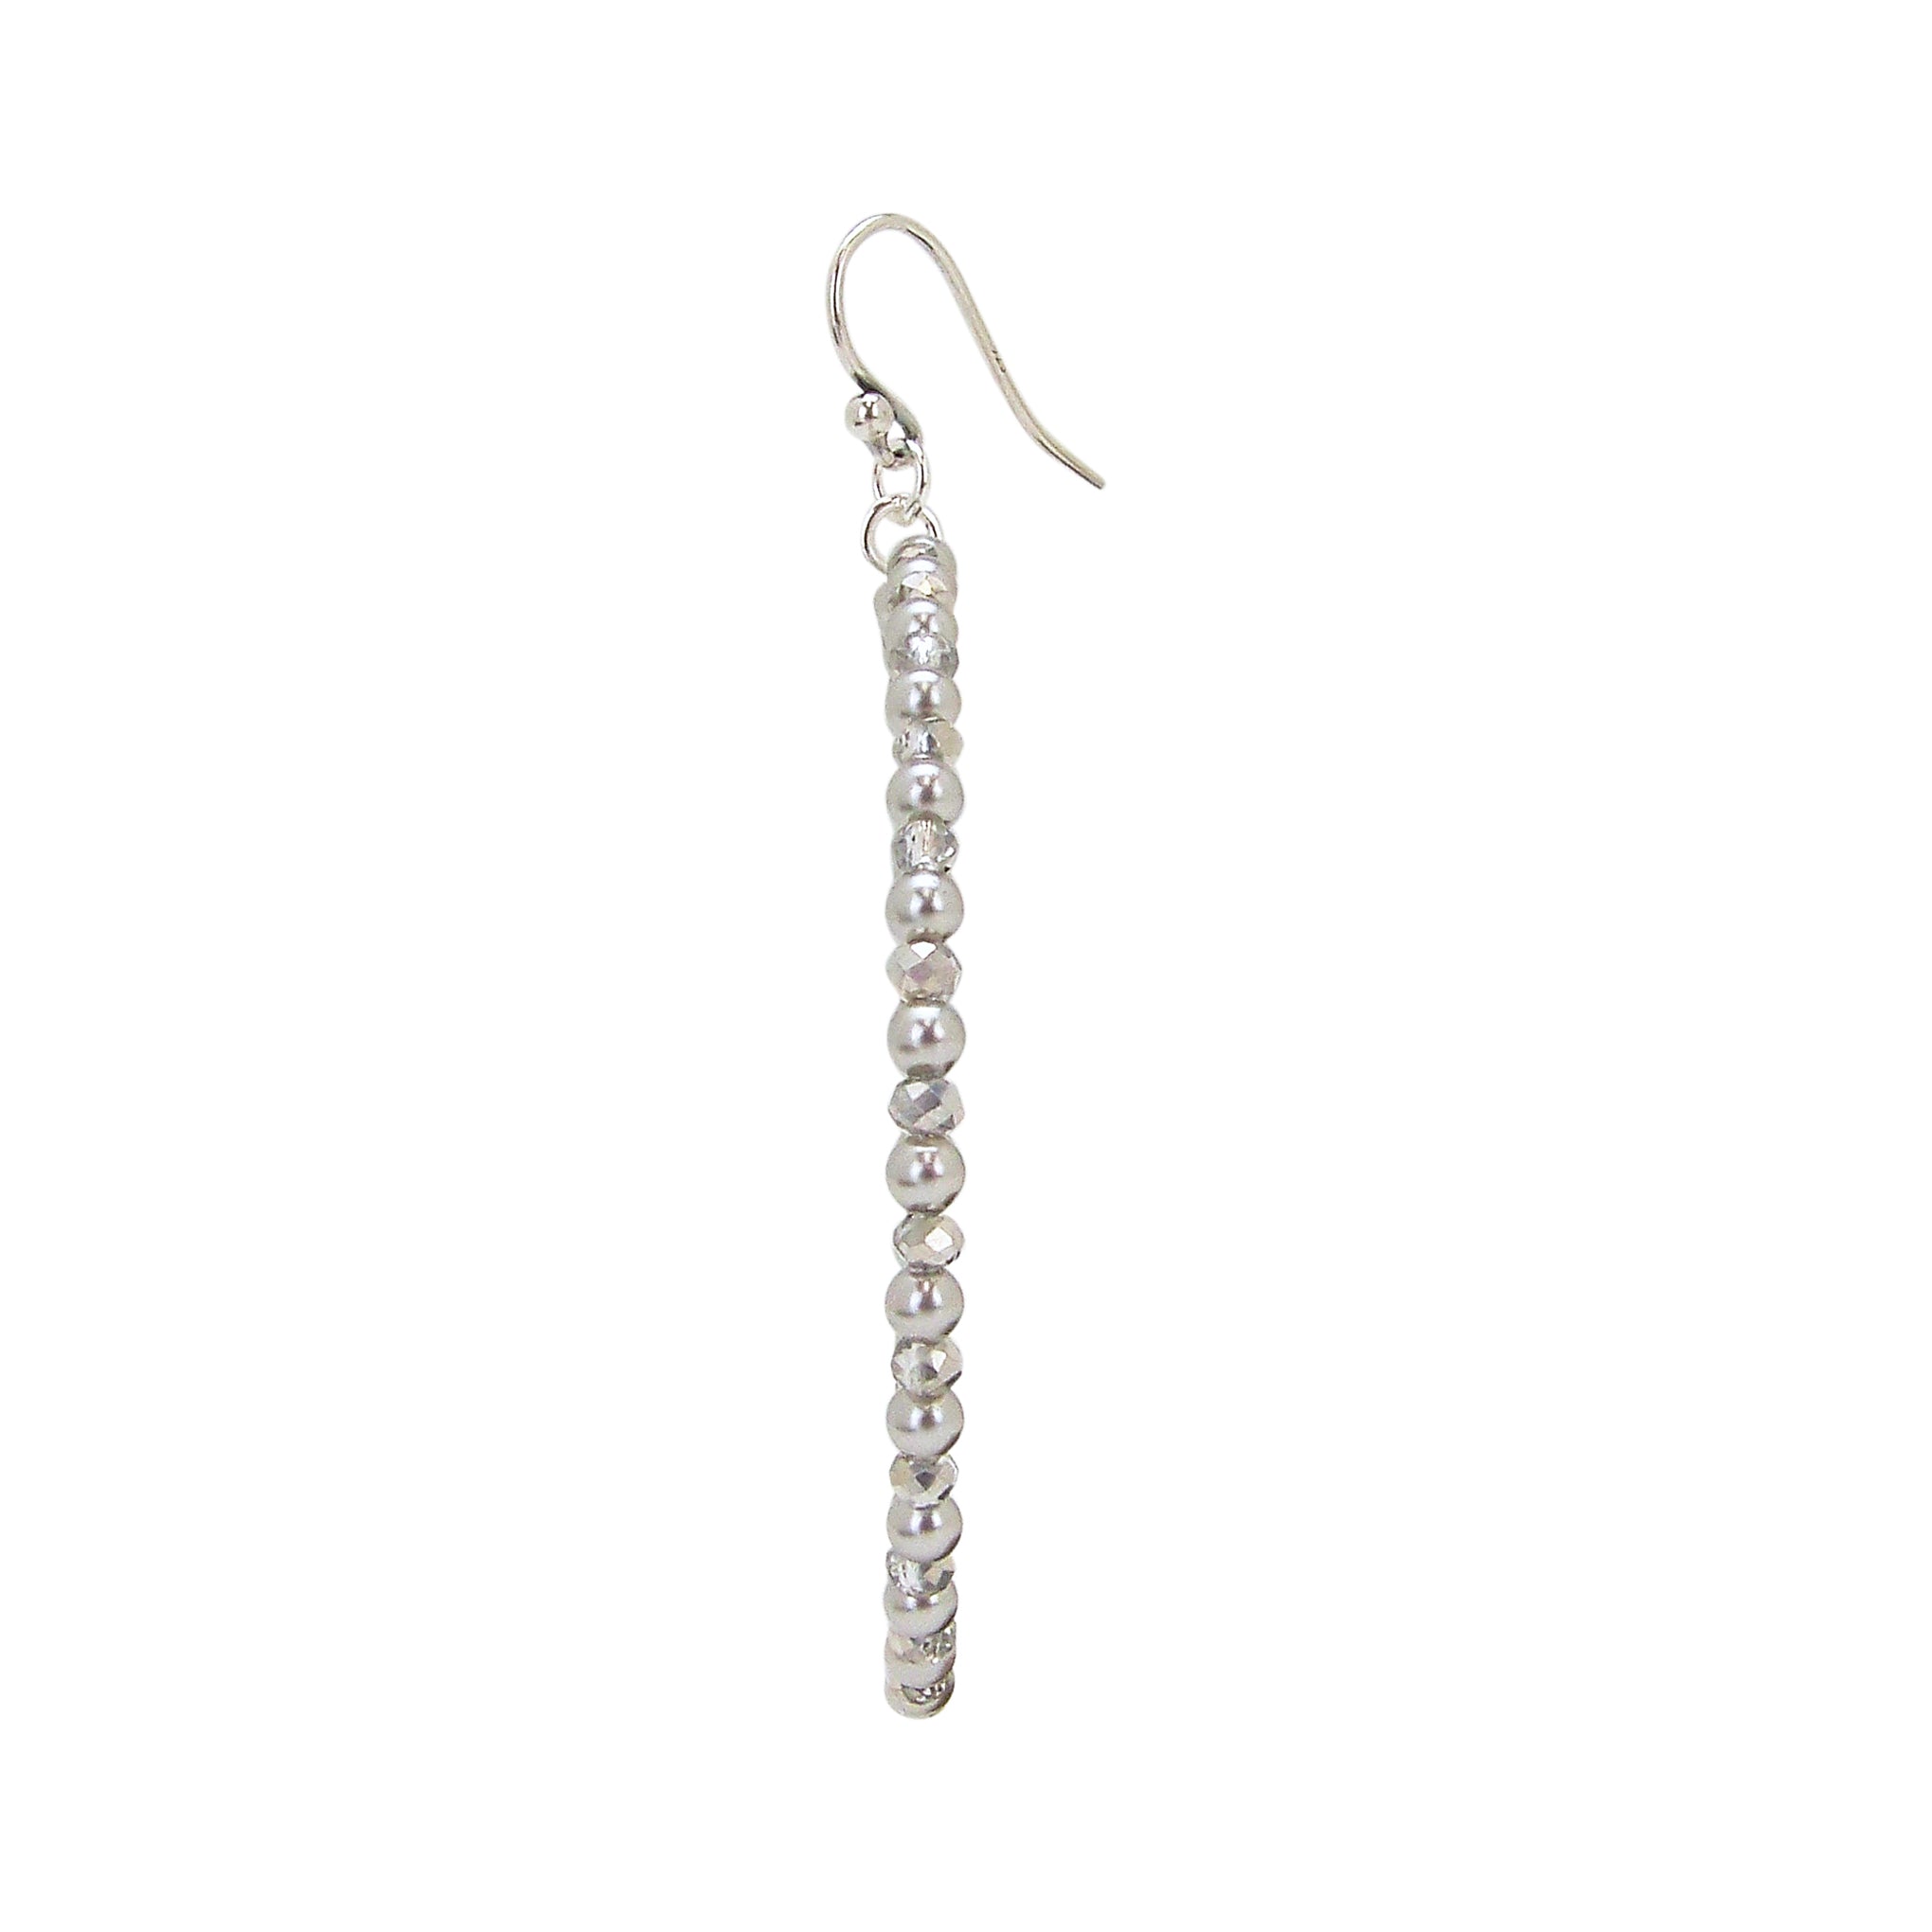 Chan Luu Silver Hoop Earrings in Grey Beads and Crystals